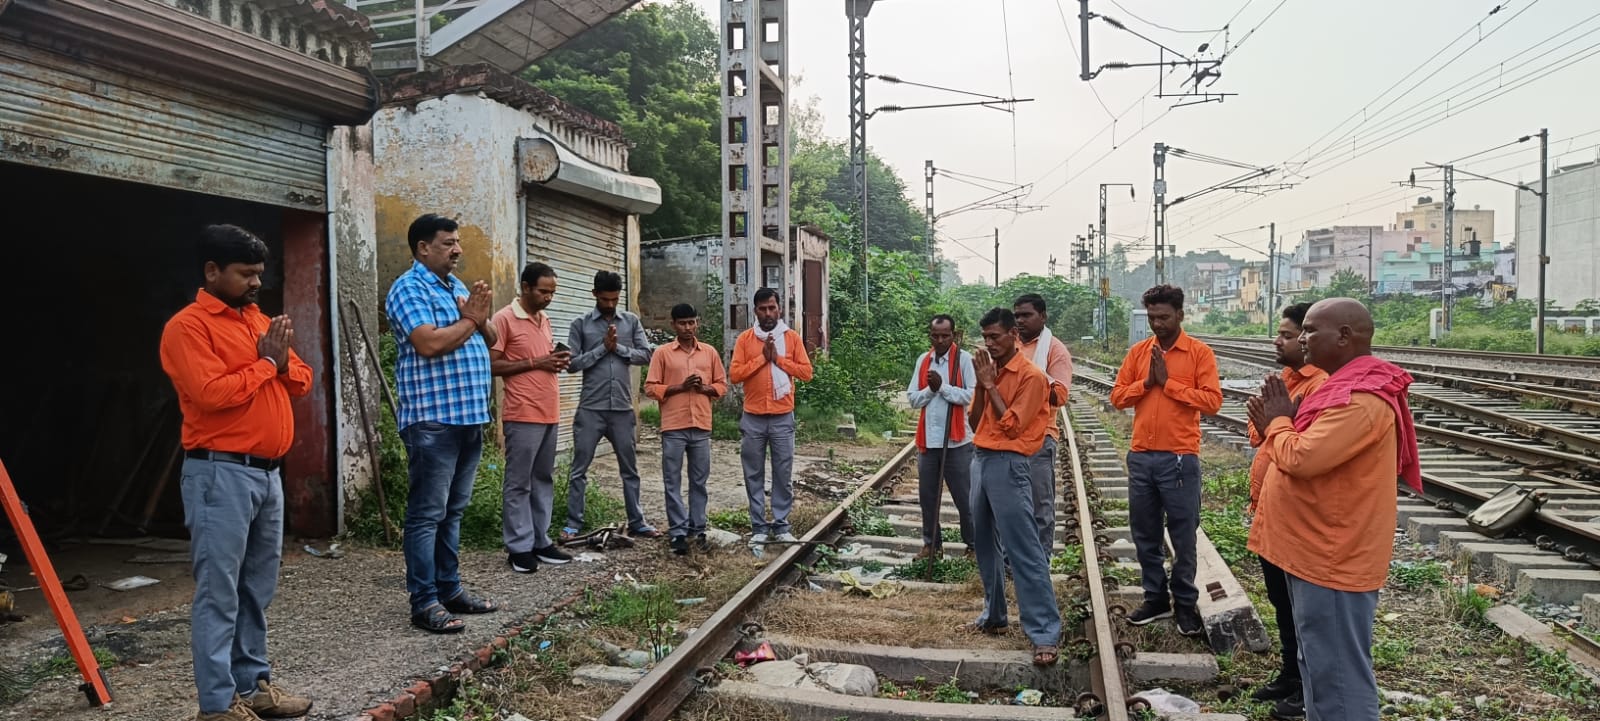 रेल कर्मियों का बलिदान भुलानाअसम्भव: नरेंद्र त्यागी | New India Times